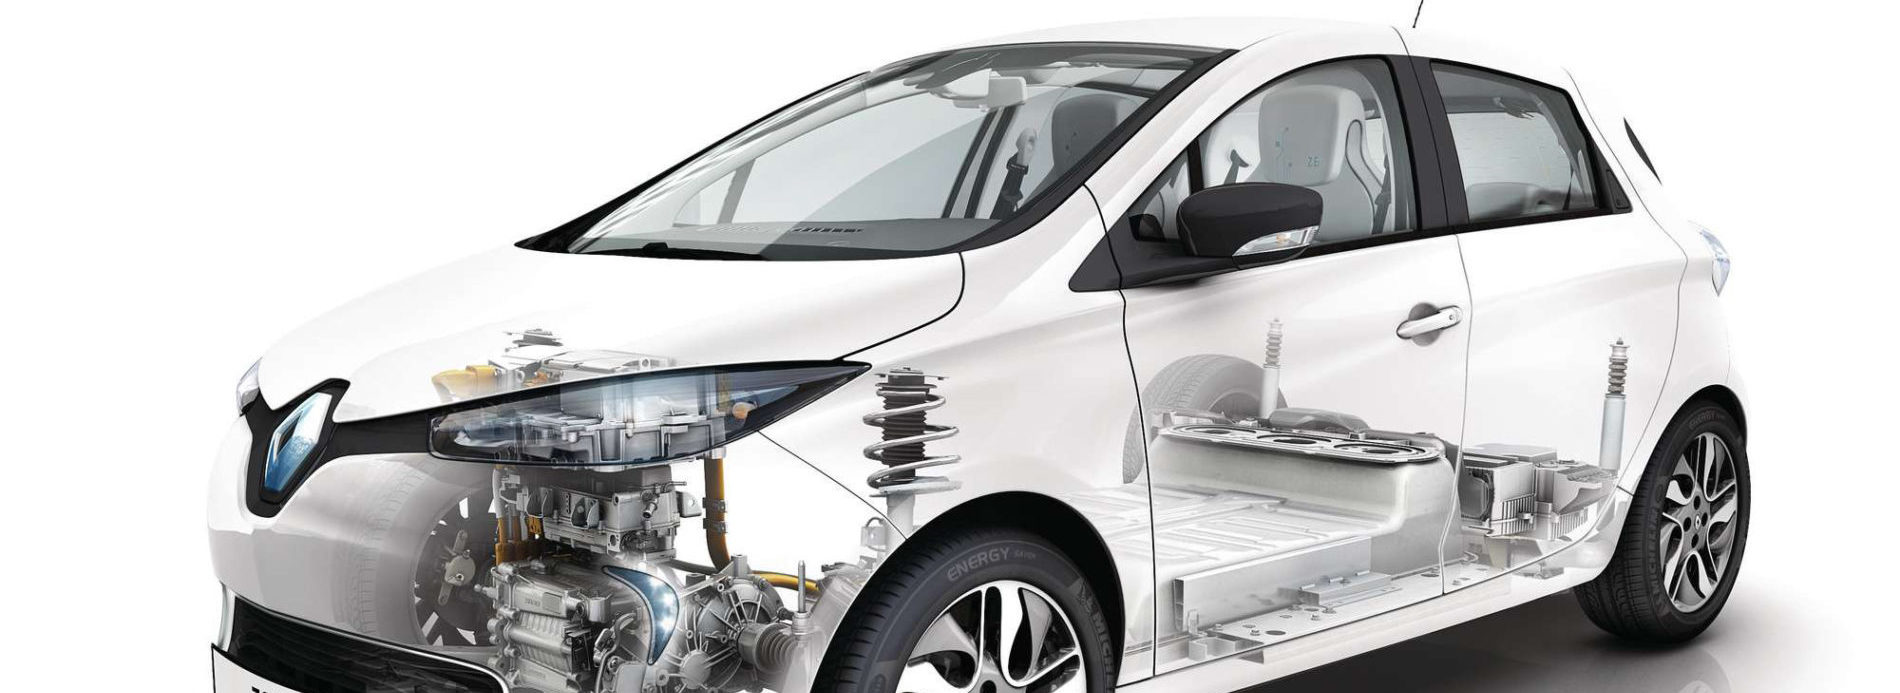 Le fonctionnement d'un moteur de voiture électrique - Easy Electric Life -  Renault Group